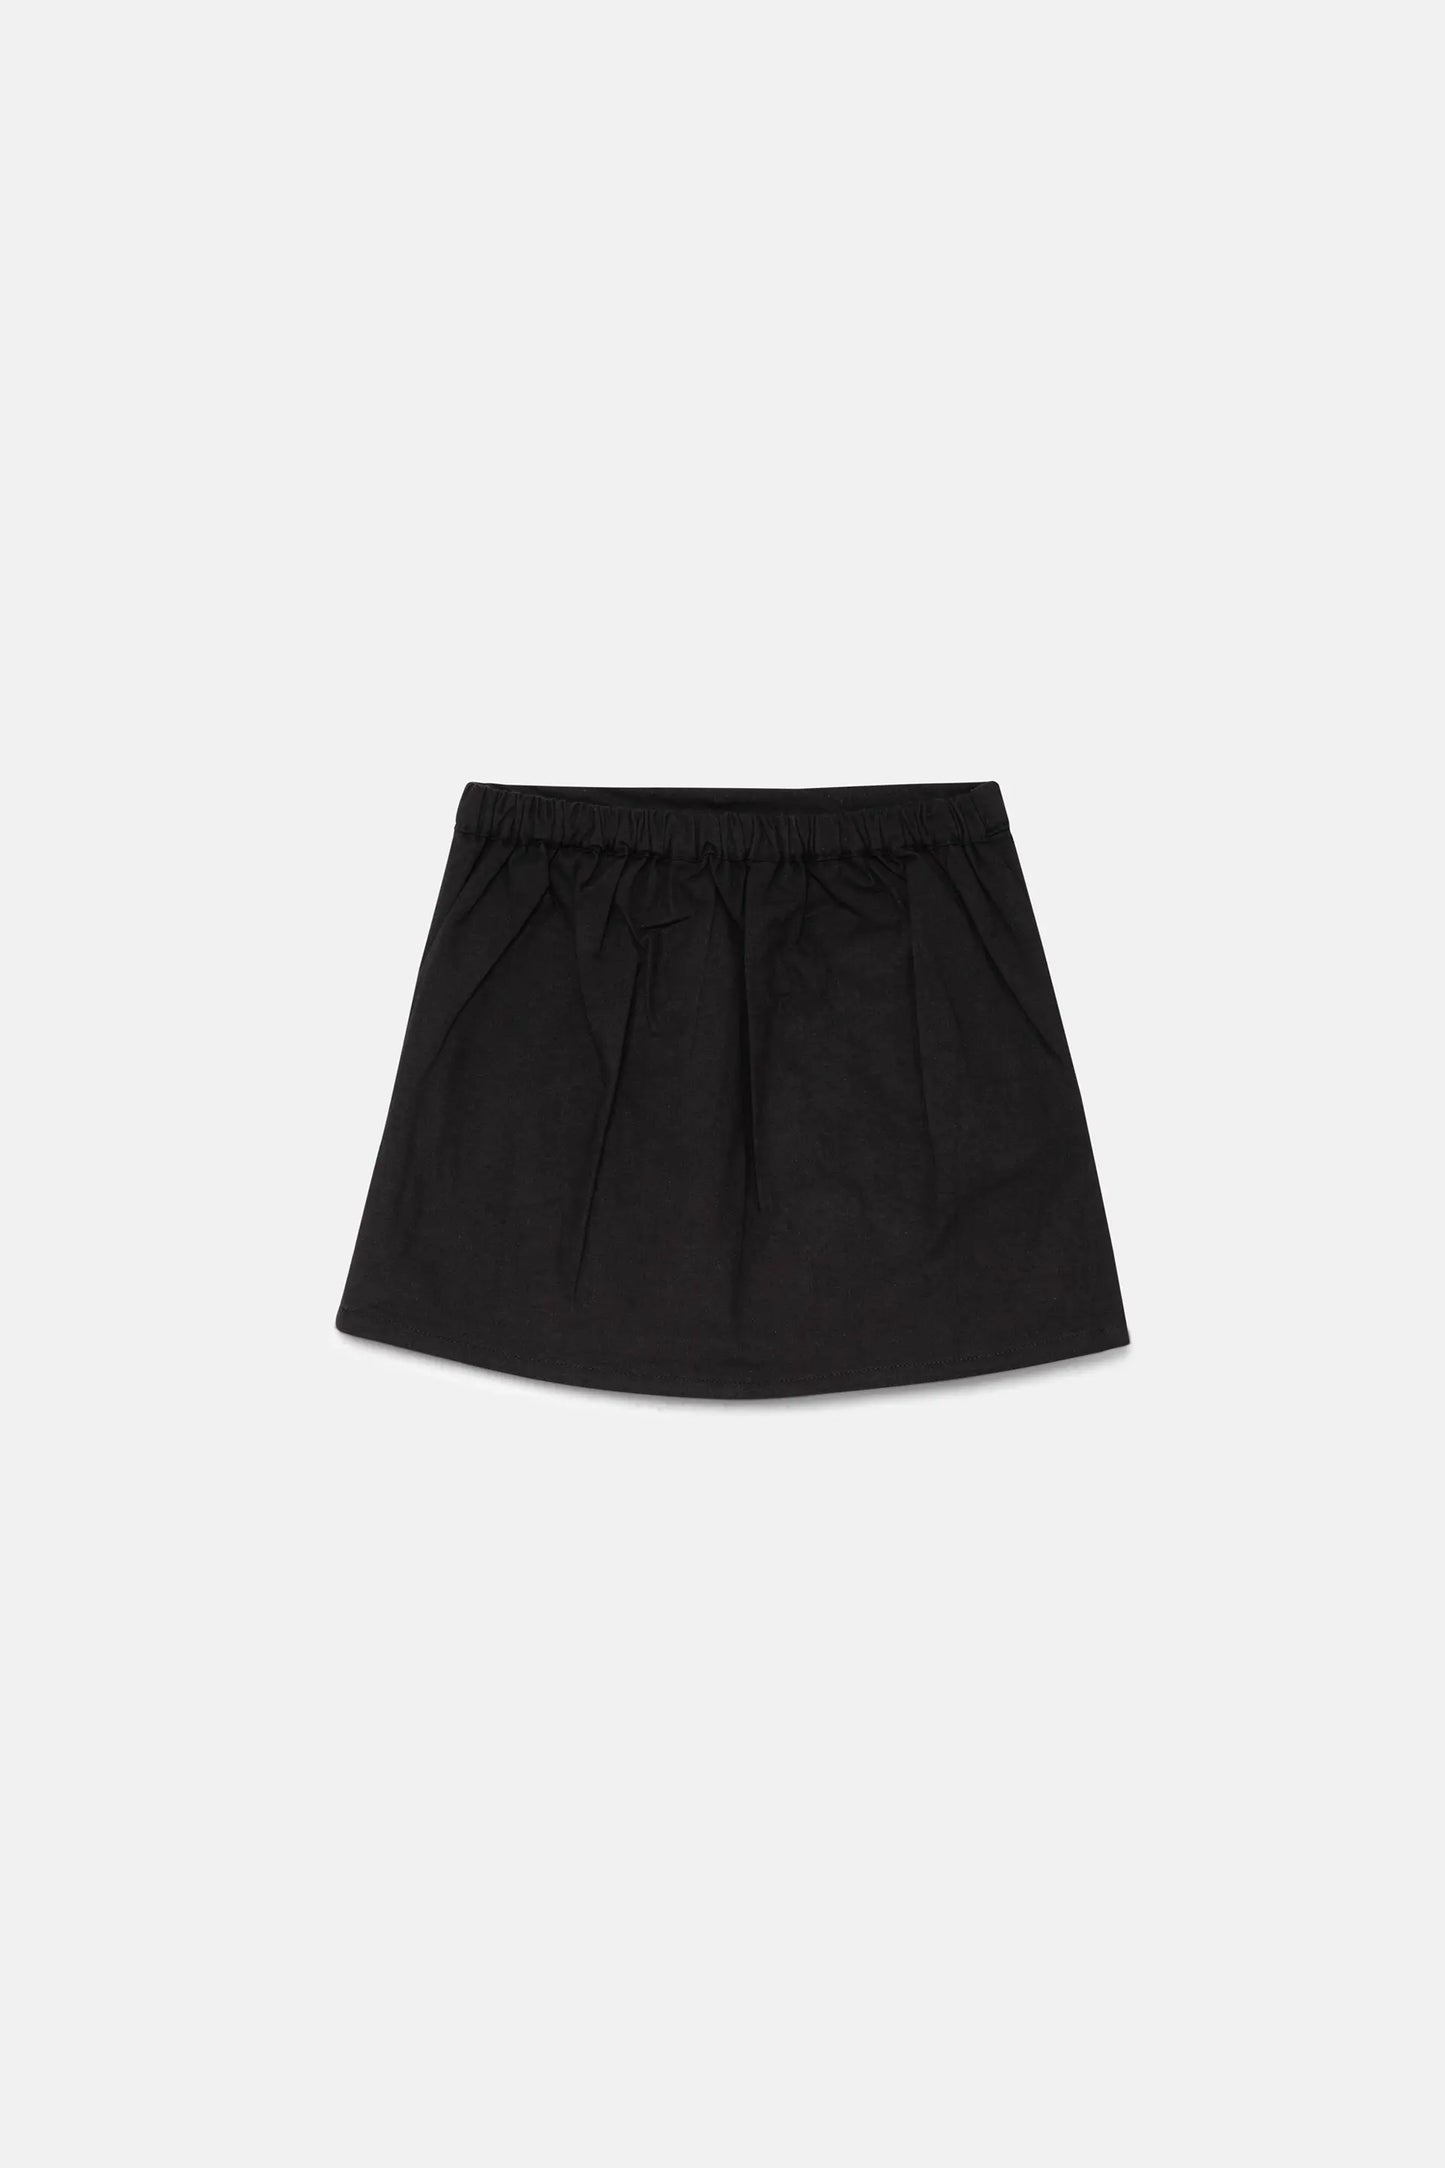 Black girl's short skirt